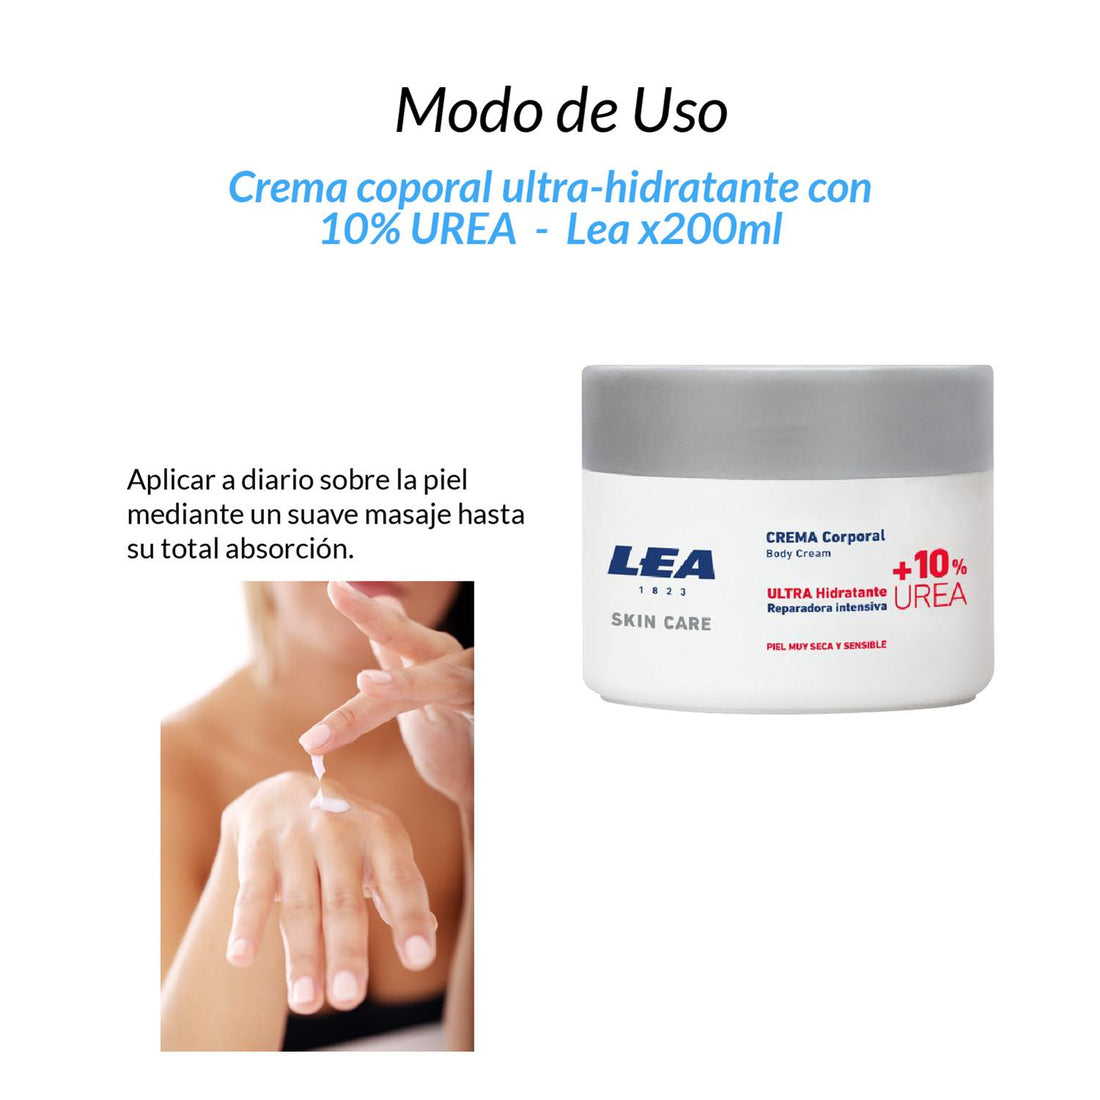 Crema corporal ultra-hidratante con 10% UREA - Lea x200ml